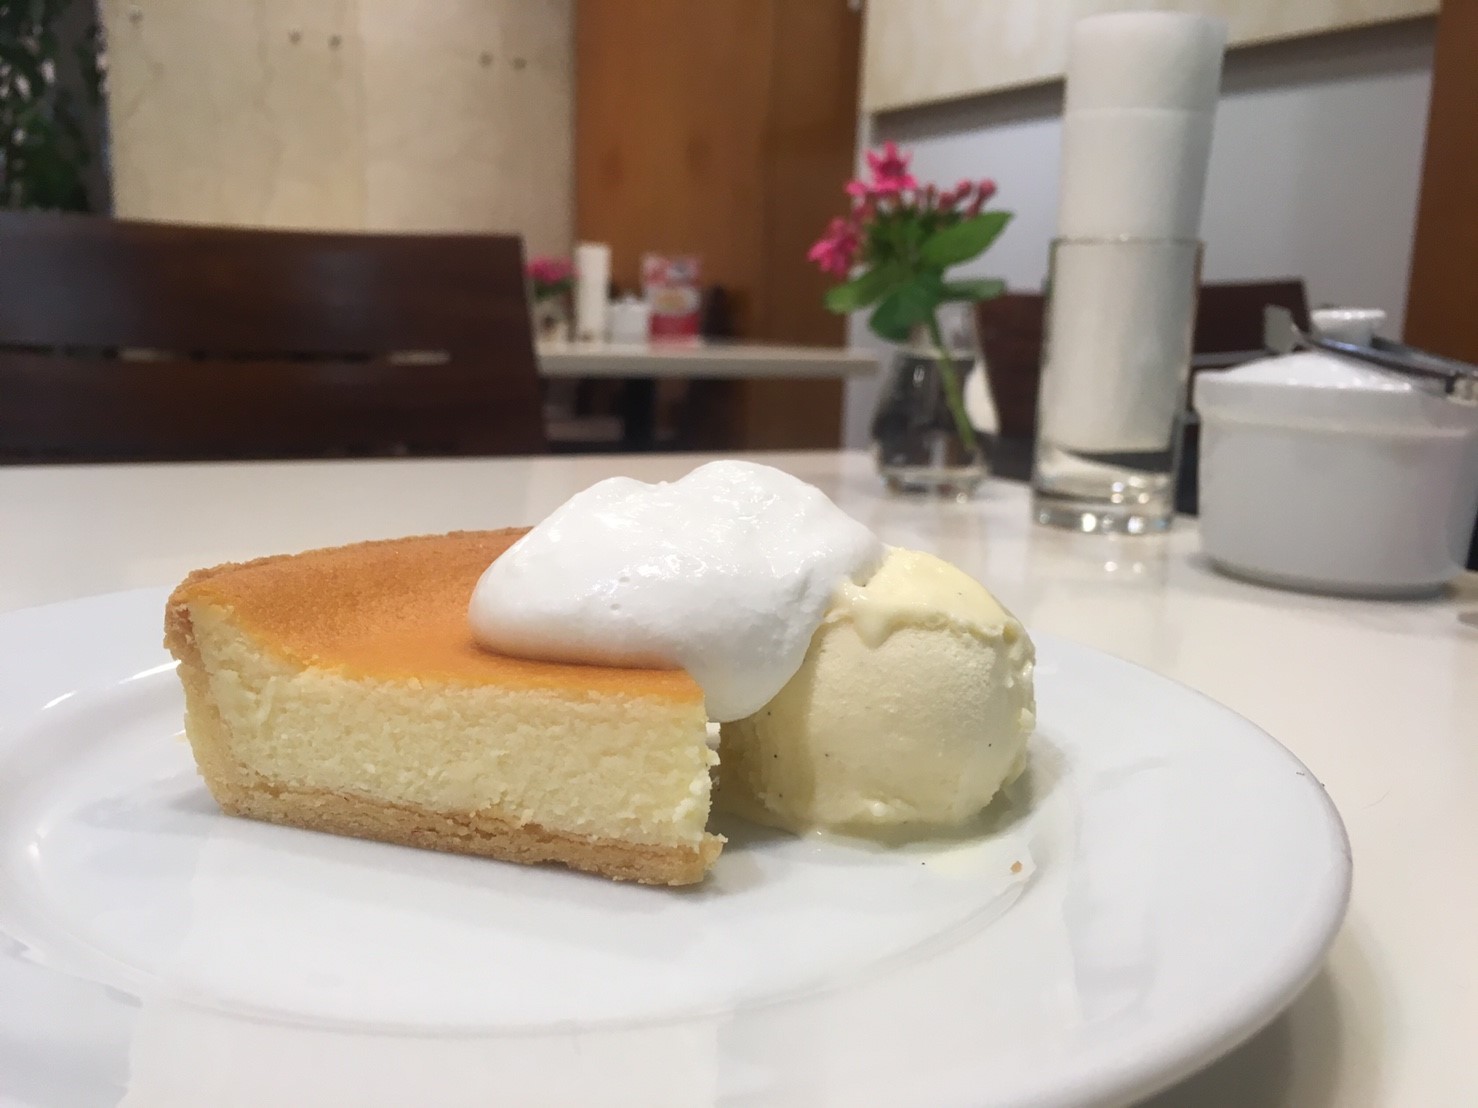 Morozoff モロゾフ 三宮センター街にある店舗で 人気のデンマーククリームチーズケーキを堪能 こべログ